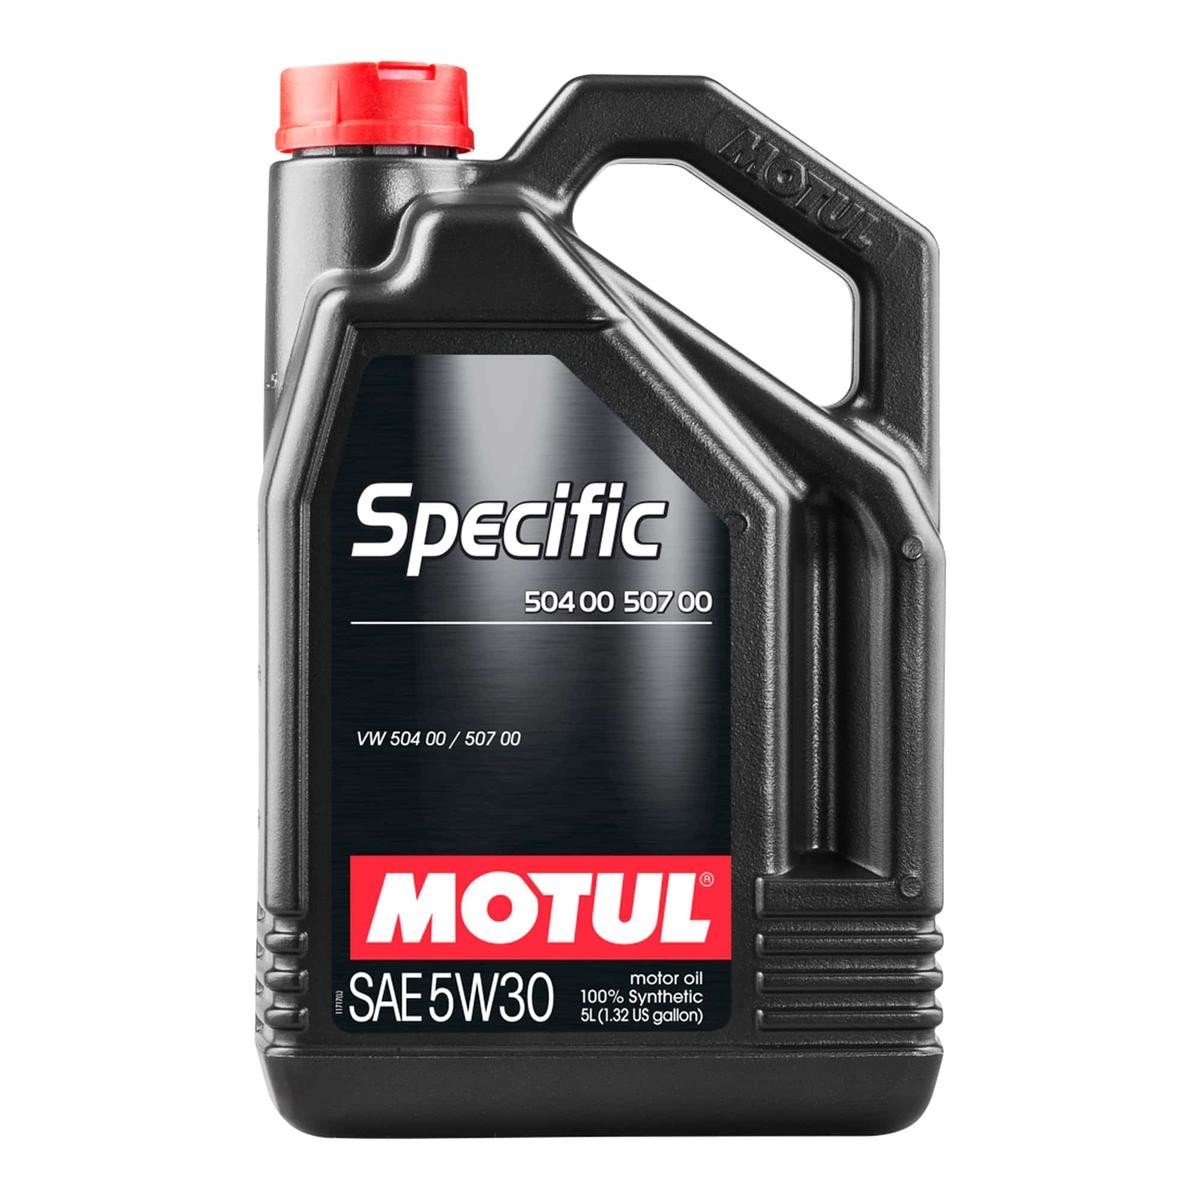 Car oil ACEA C3 MOTUL - 106375 SPECIFIC, 504 00 507 00